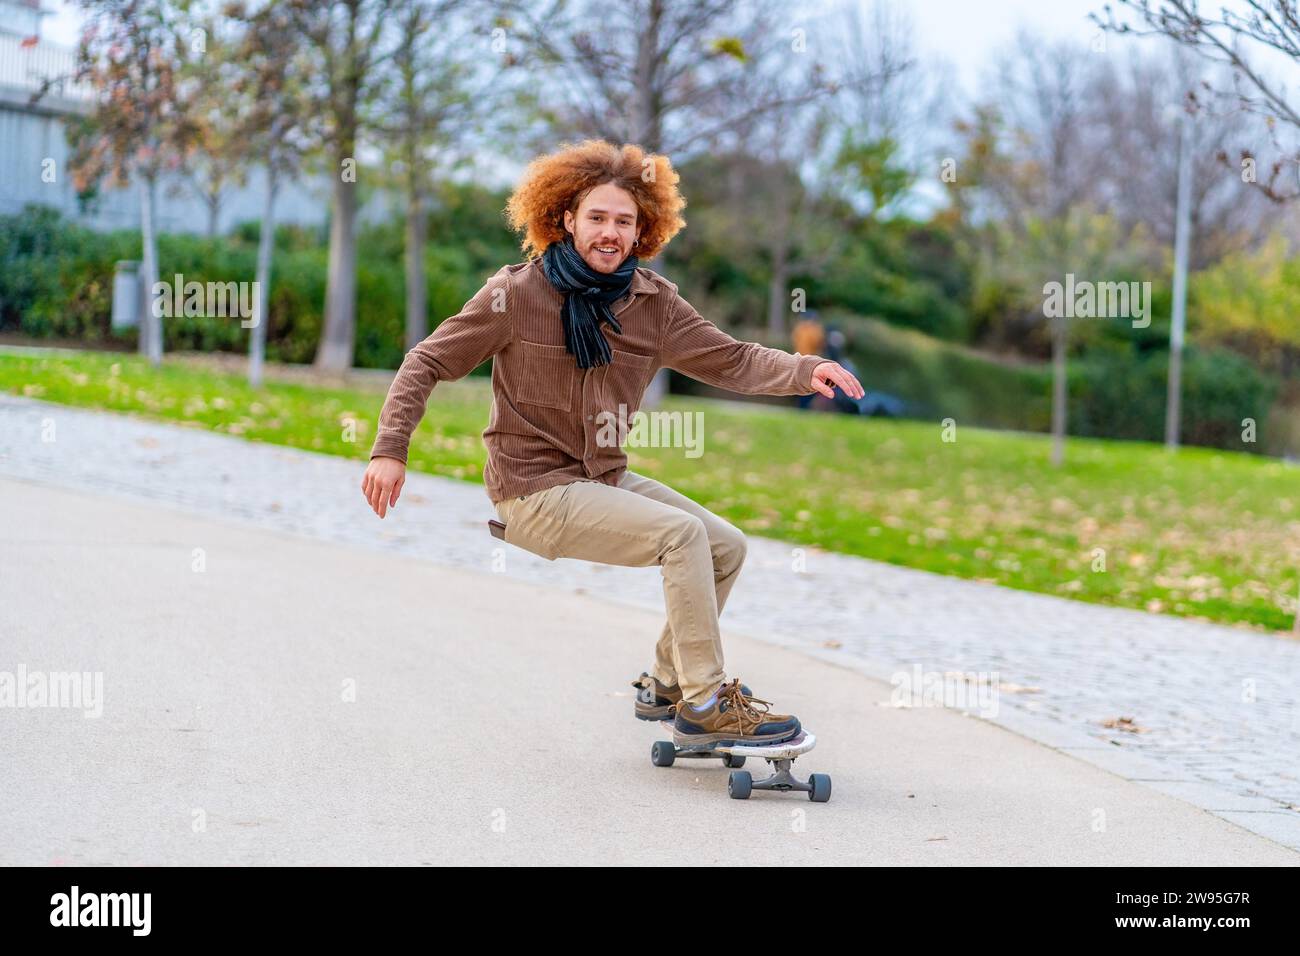 Foto mit Bewegungs- und Kopierraum eines glücklichen jungen Mannes, der in einem urbanen Park Skateboarden fährt Stockfoto